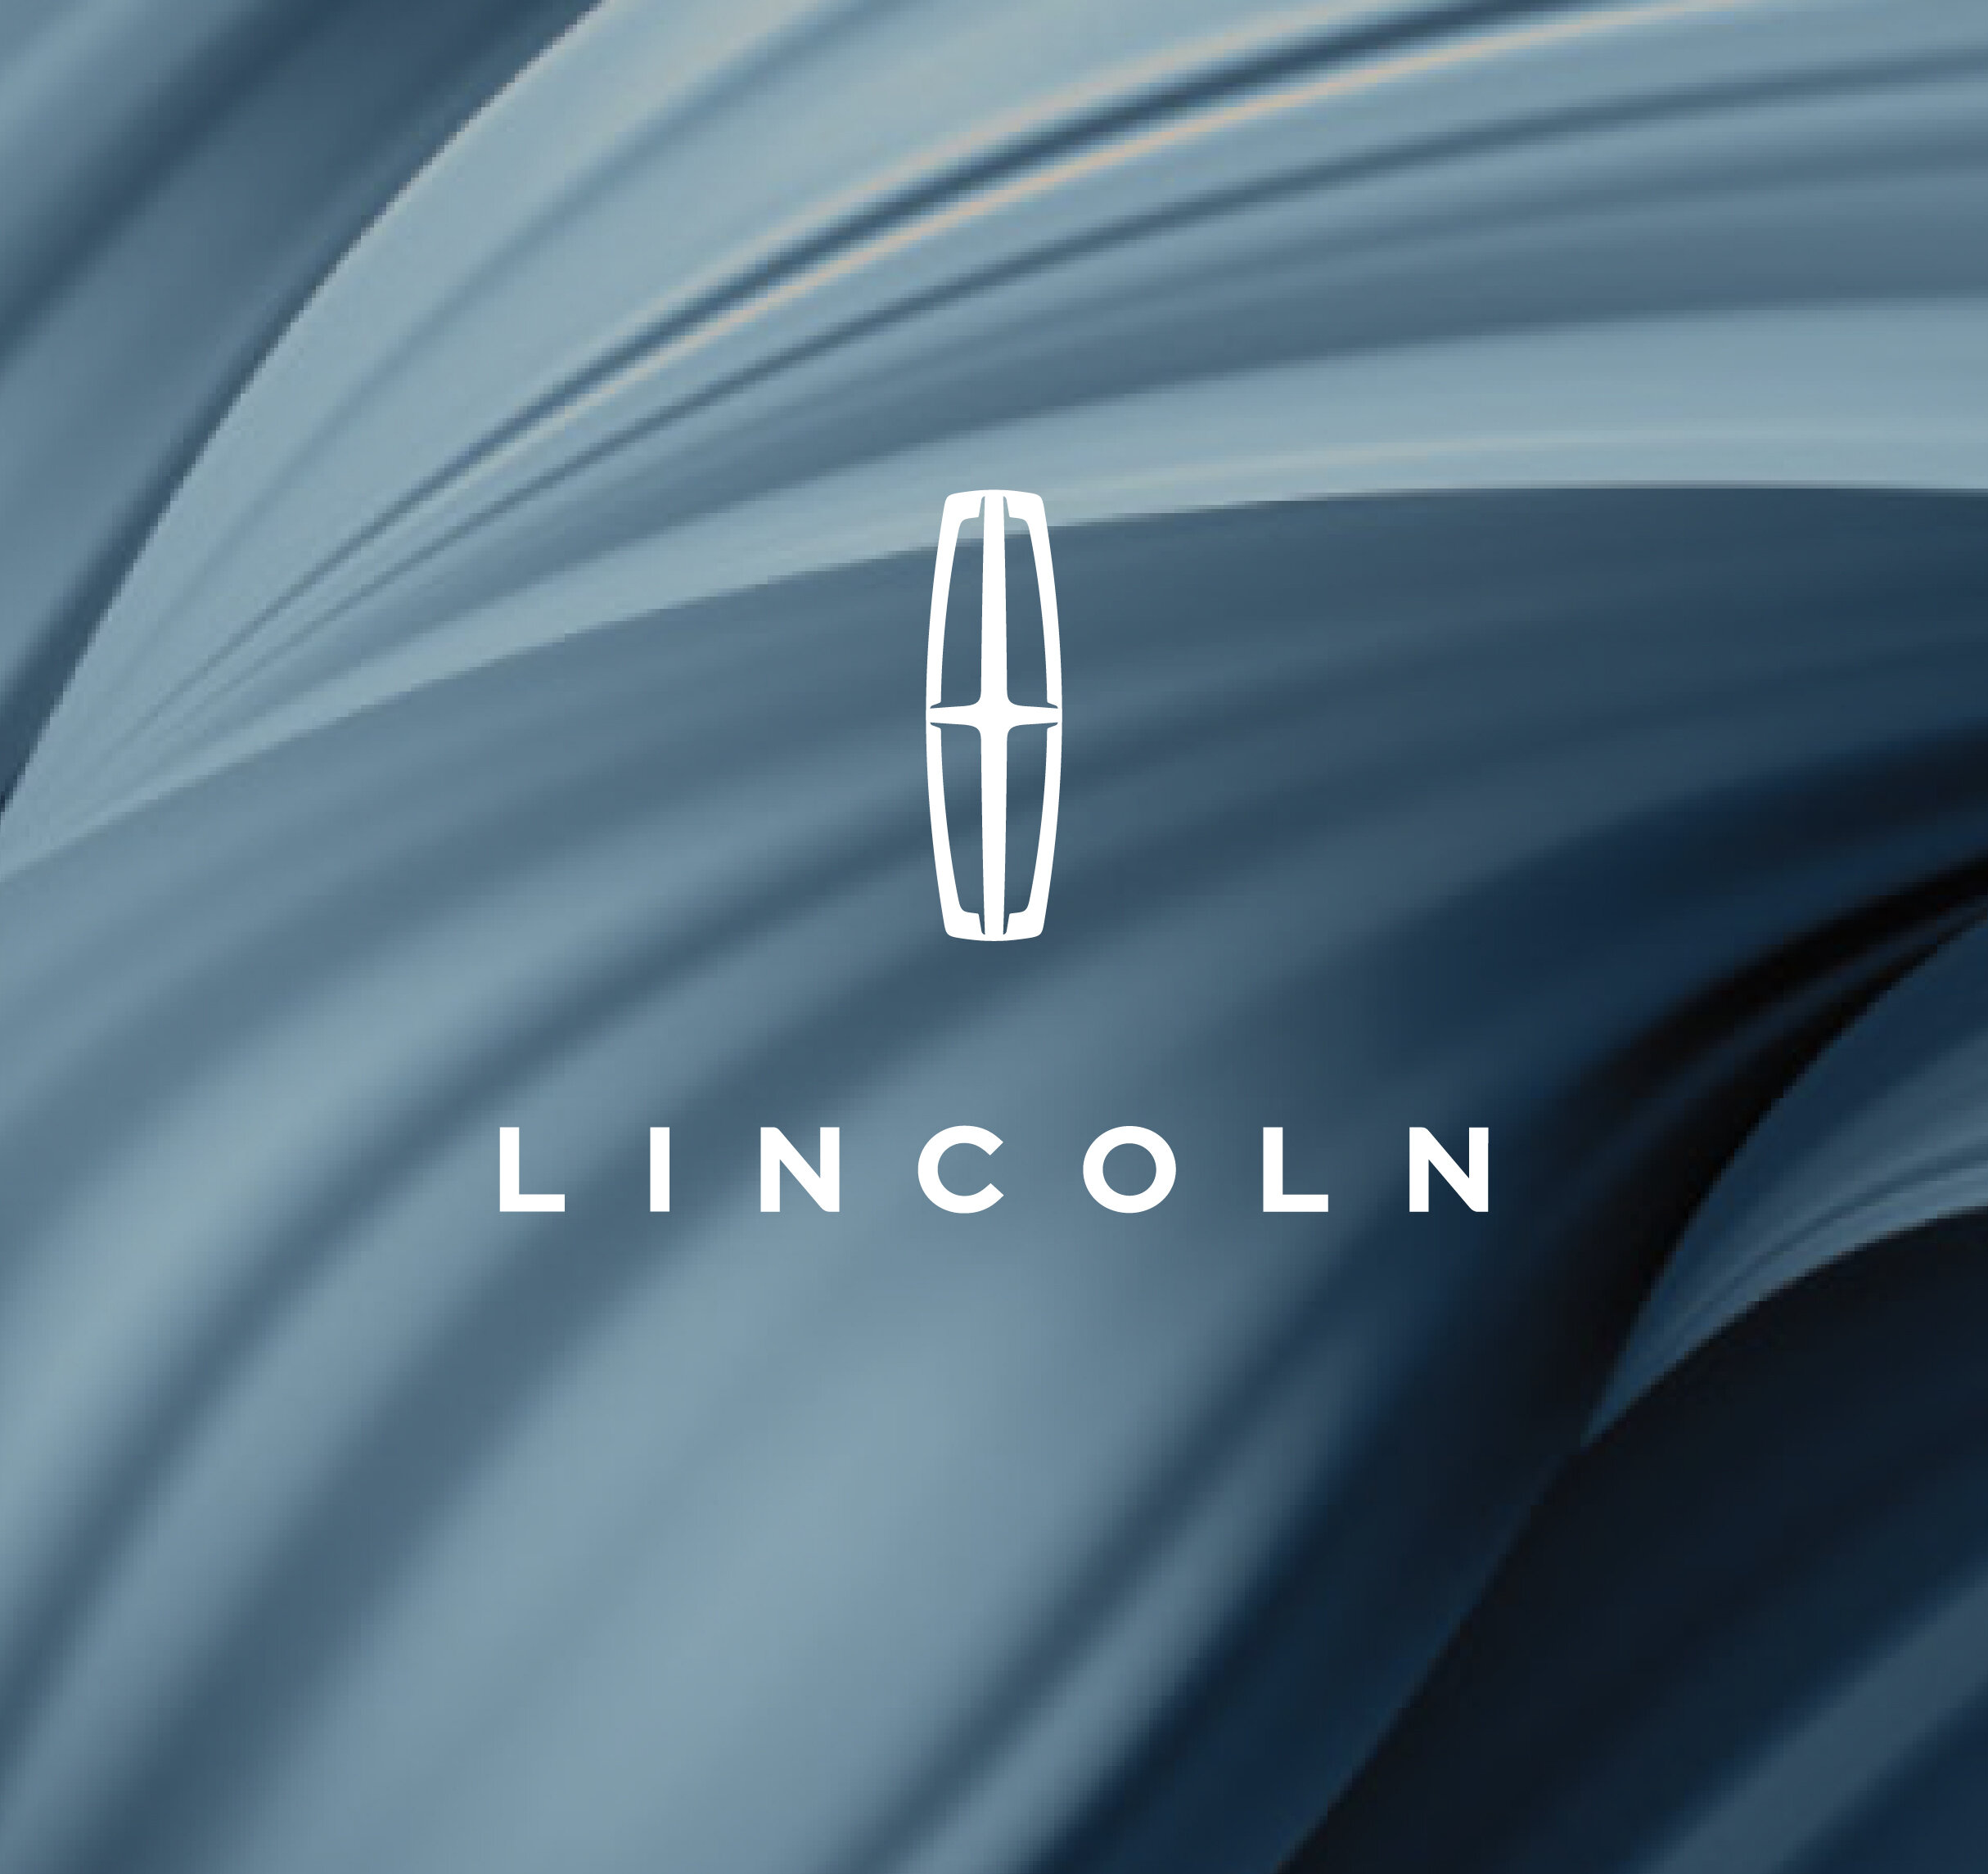 Lincoln Corsair Briefing